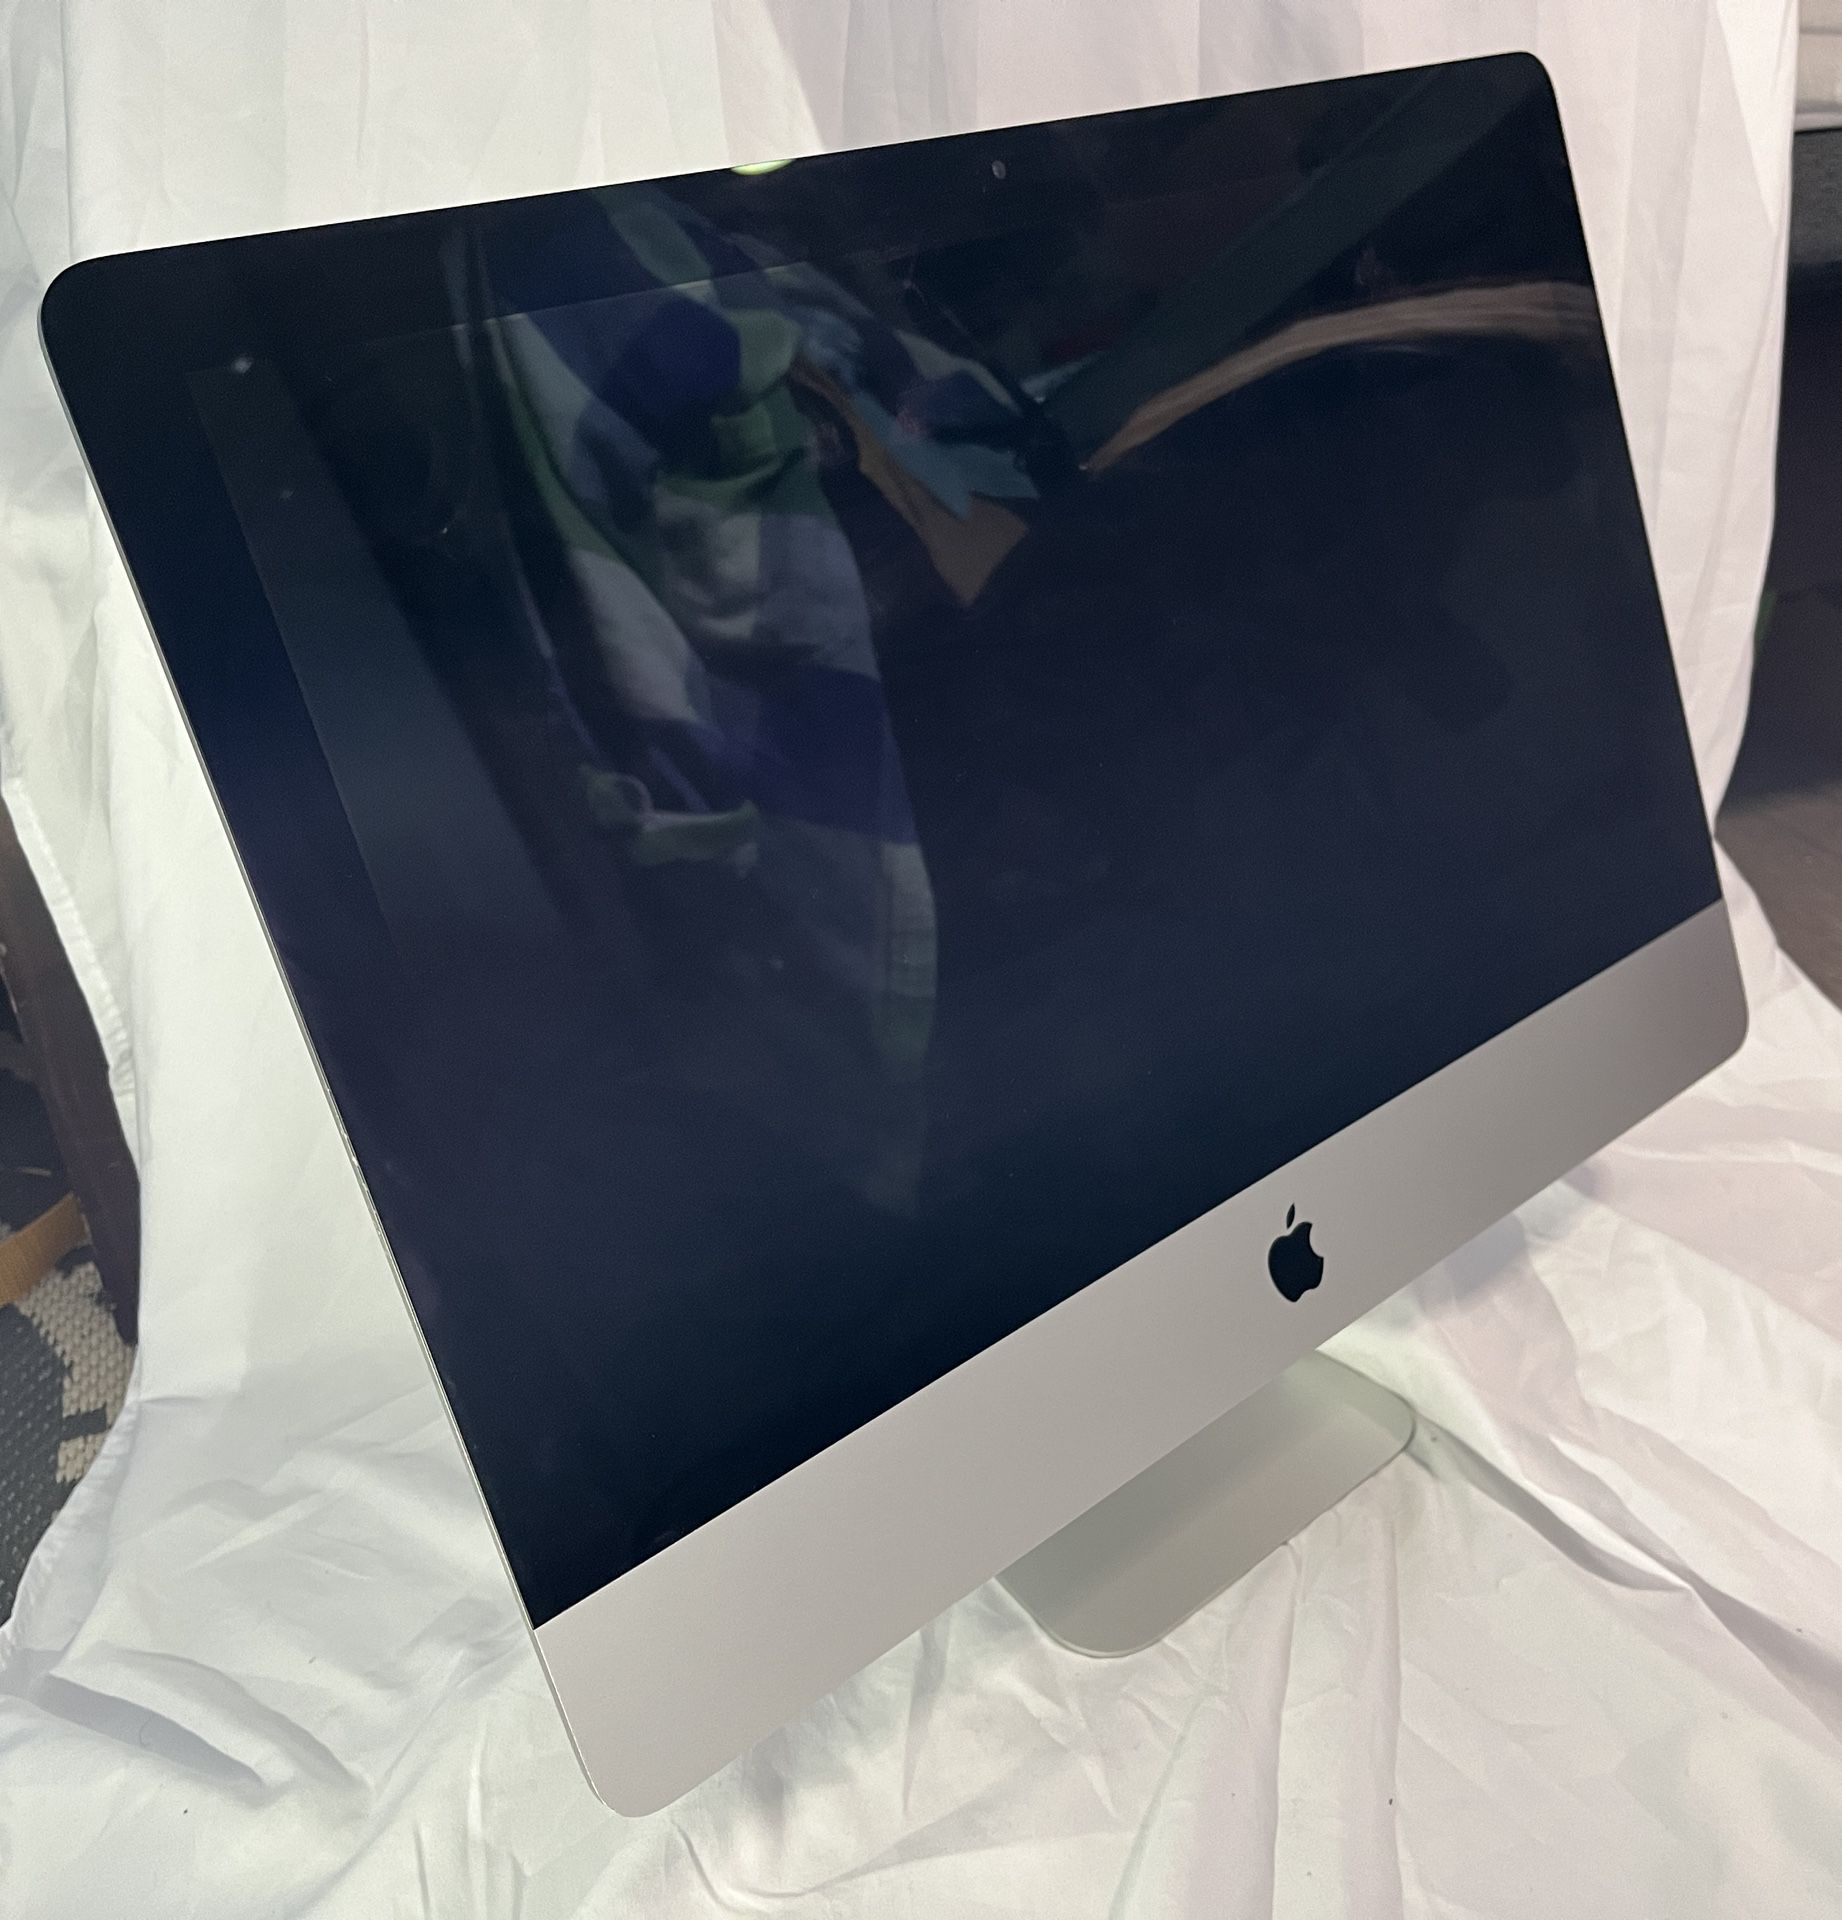 Apple iMac 21.5” 2019 w/ Wireless Keyboard & Mouse